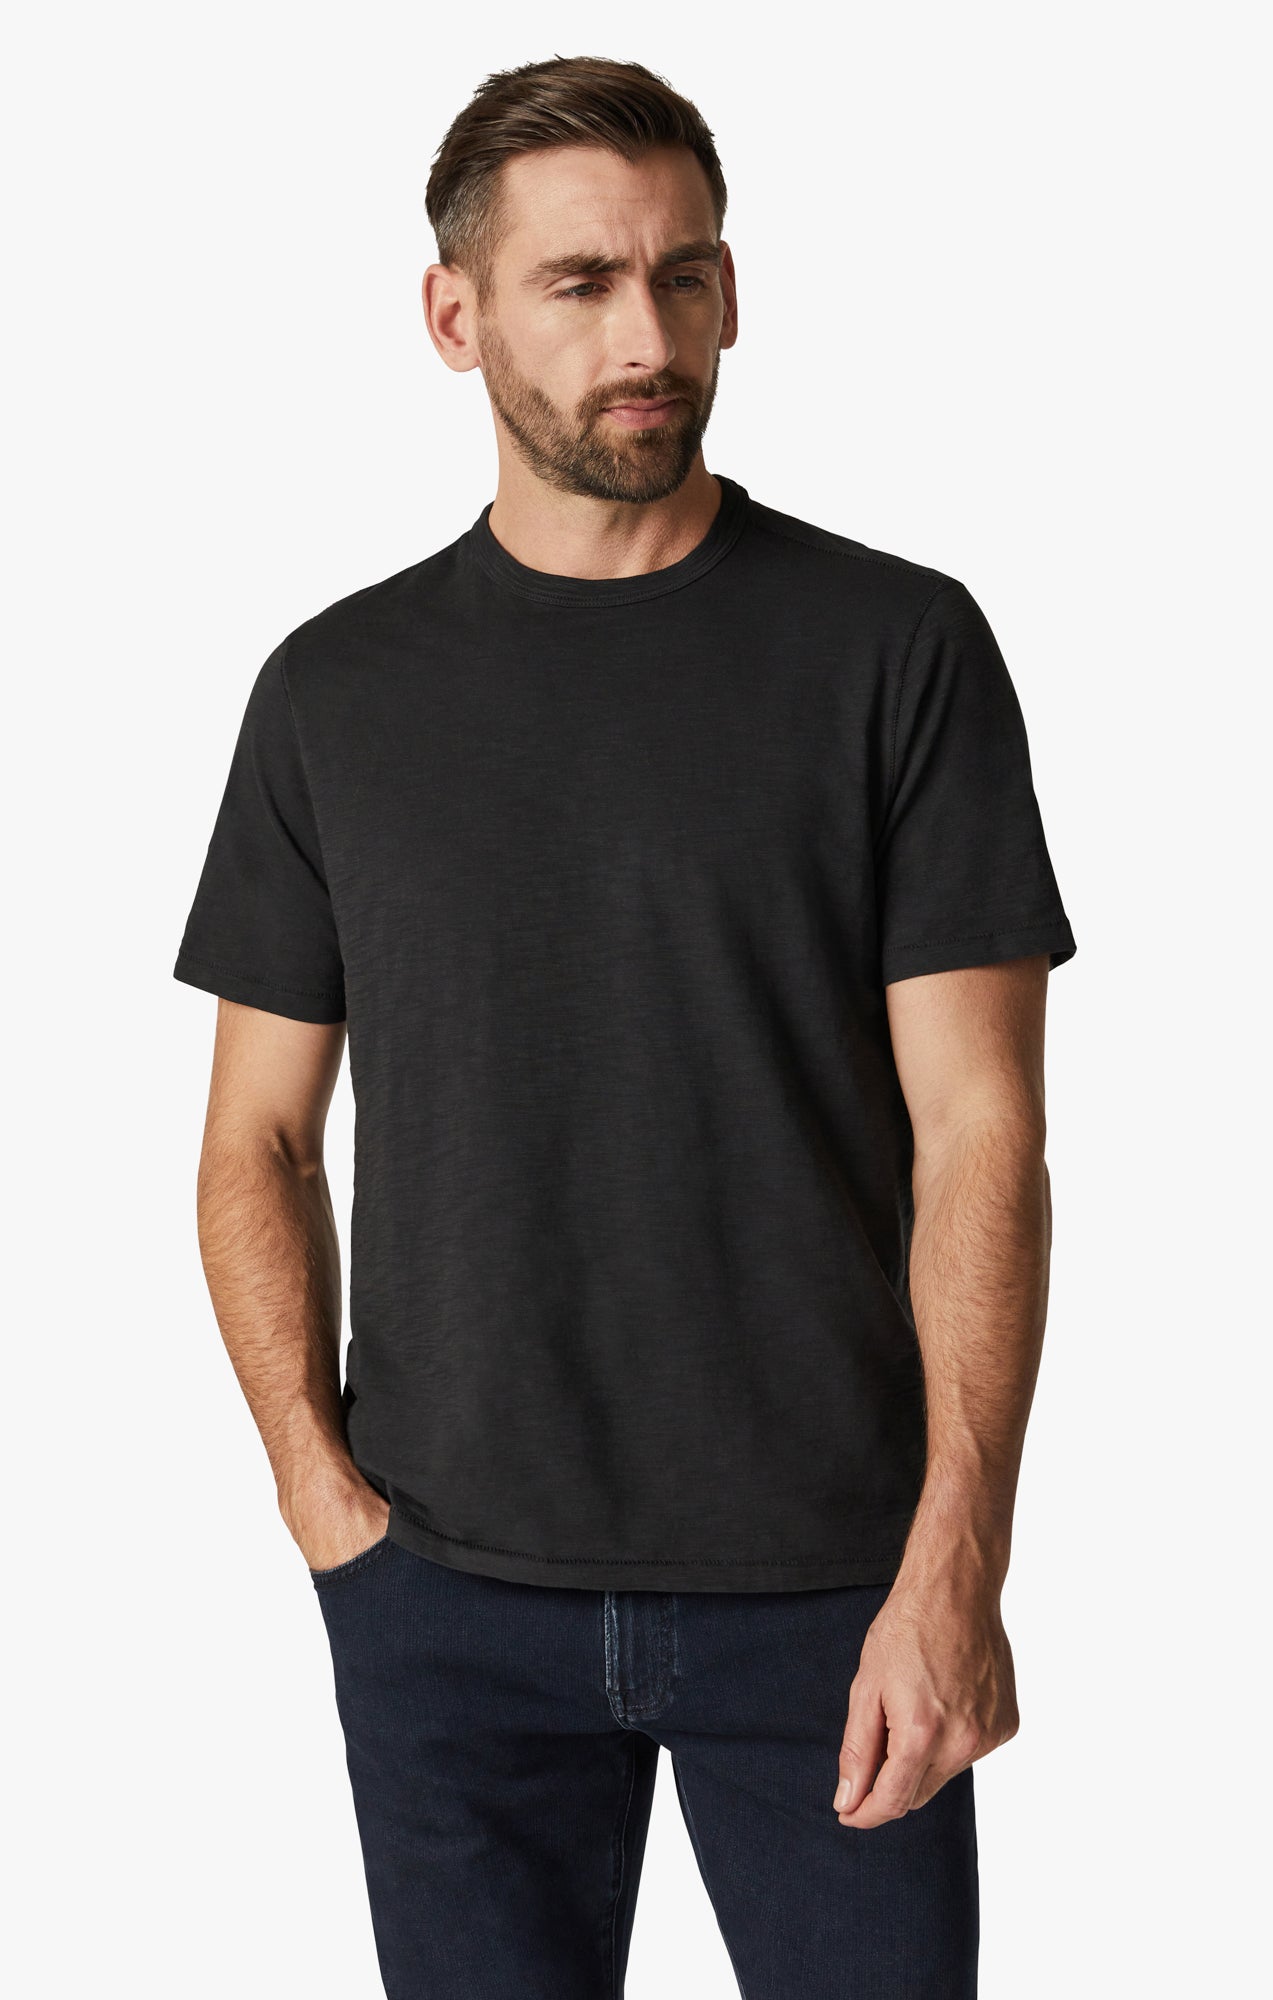 Slub Crew Neck T-Shirt in Black Image 1